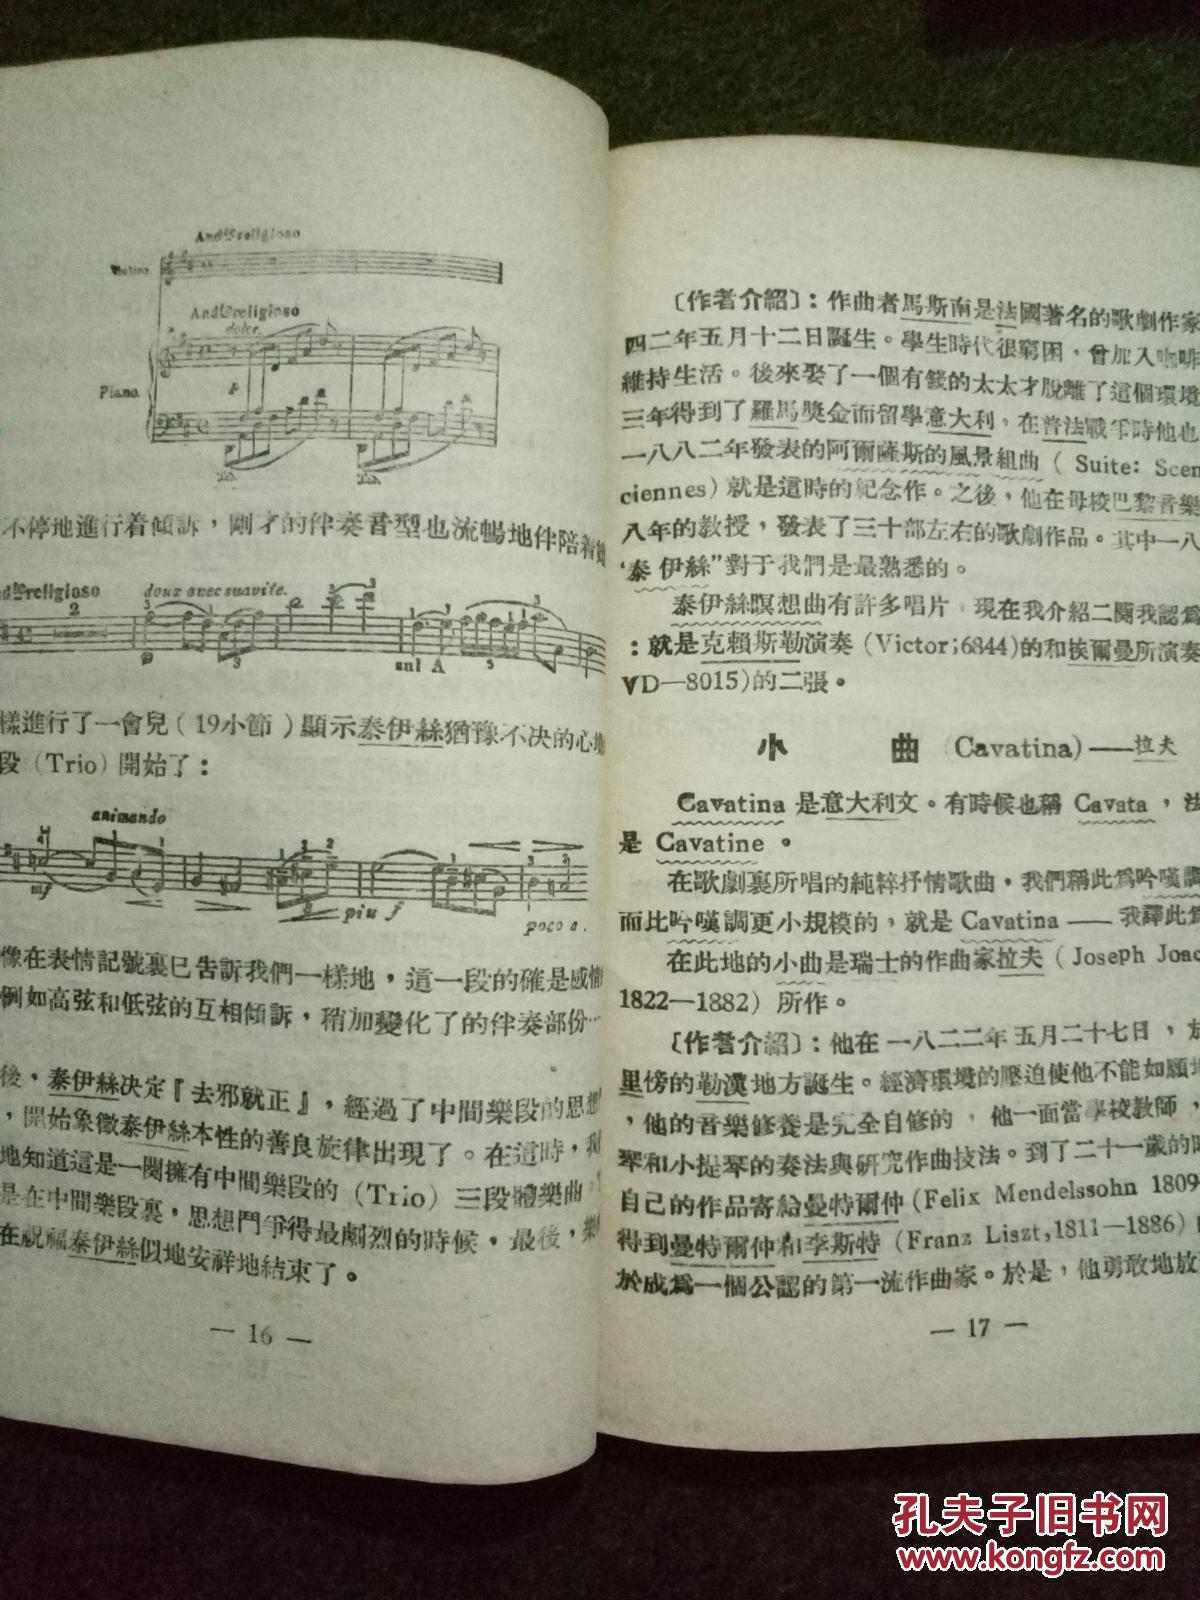 【图】世界著名小提琴曲解说_上海音乐出版社